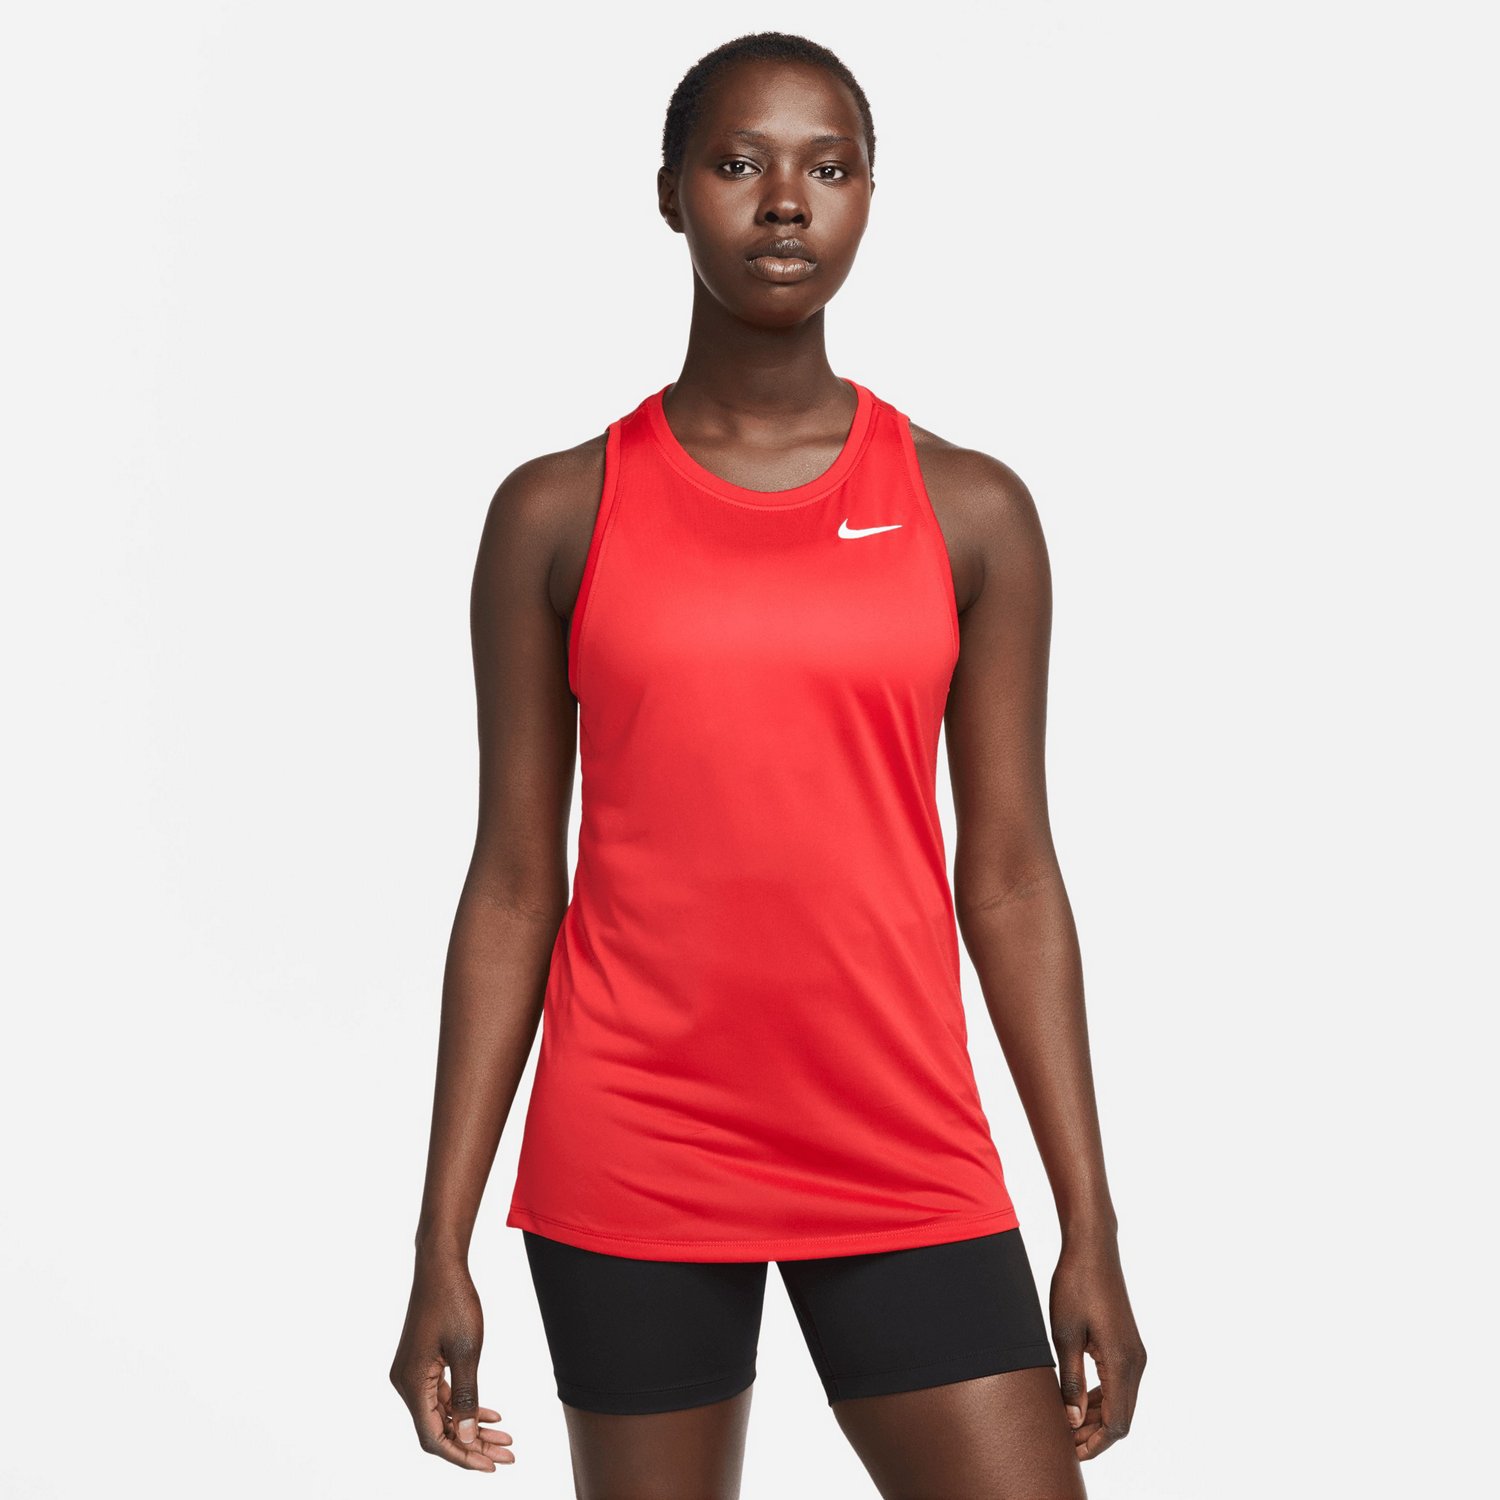 Nike Womens Dri-FIT Tank Top